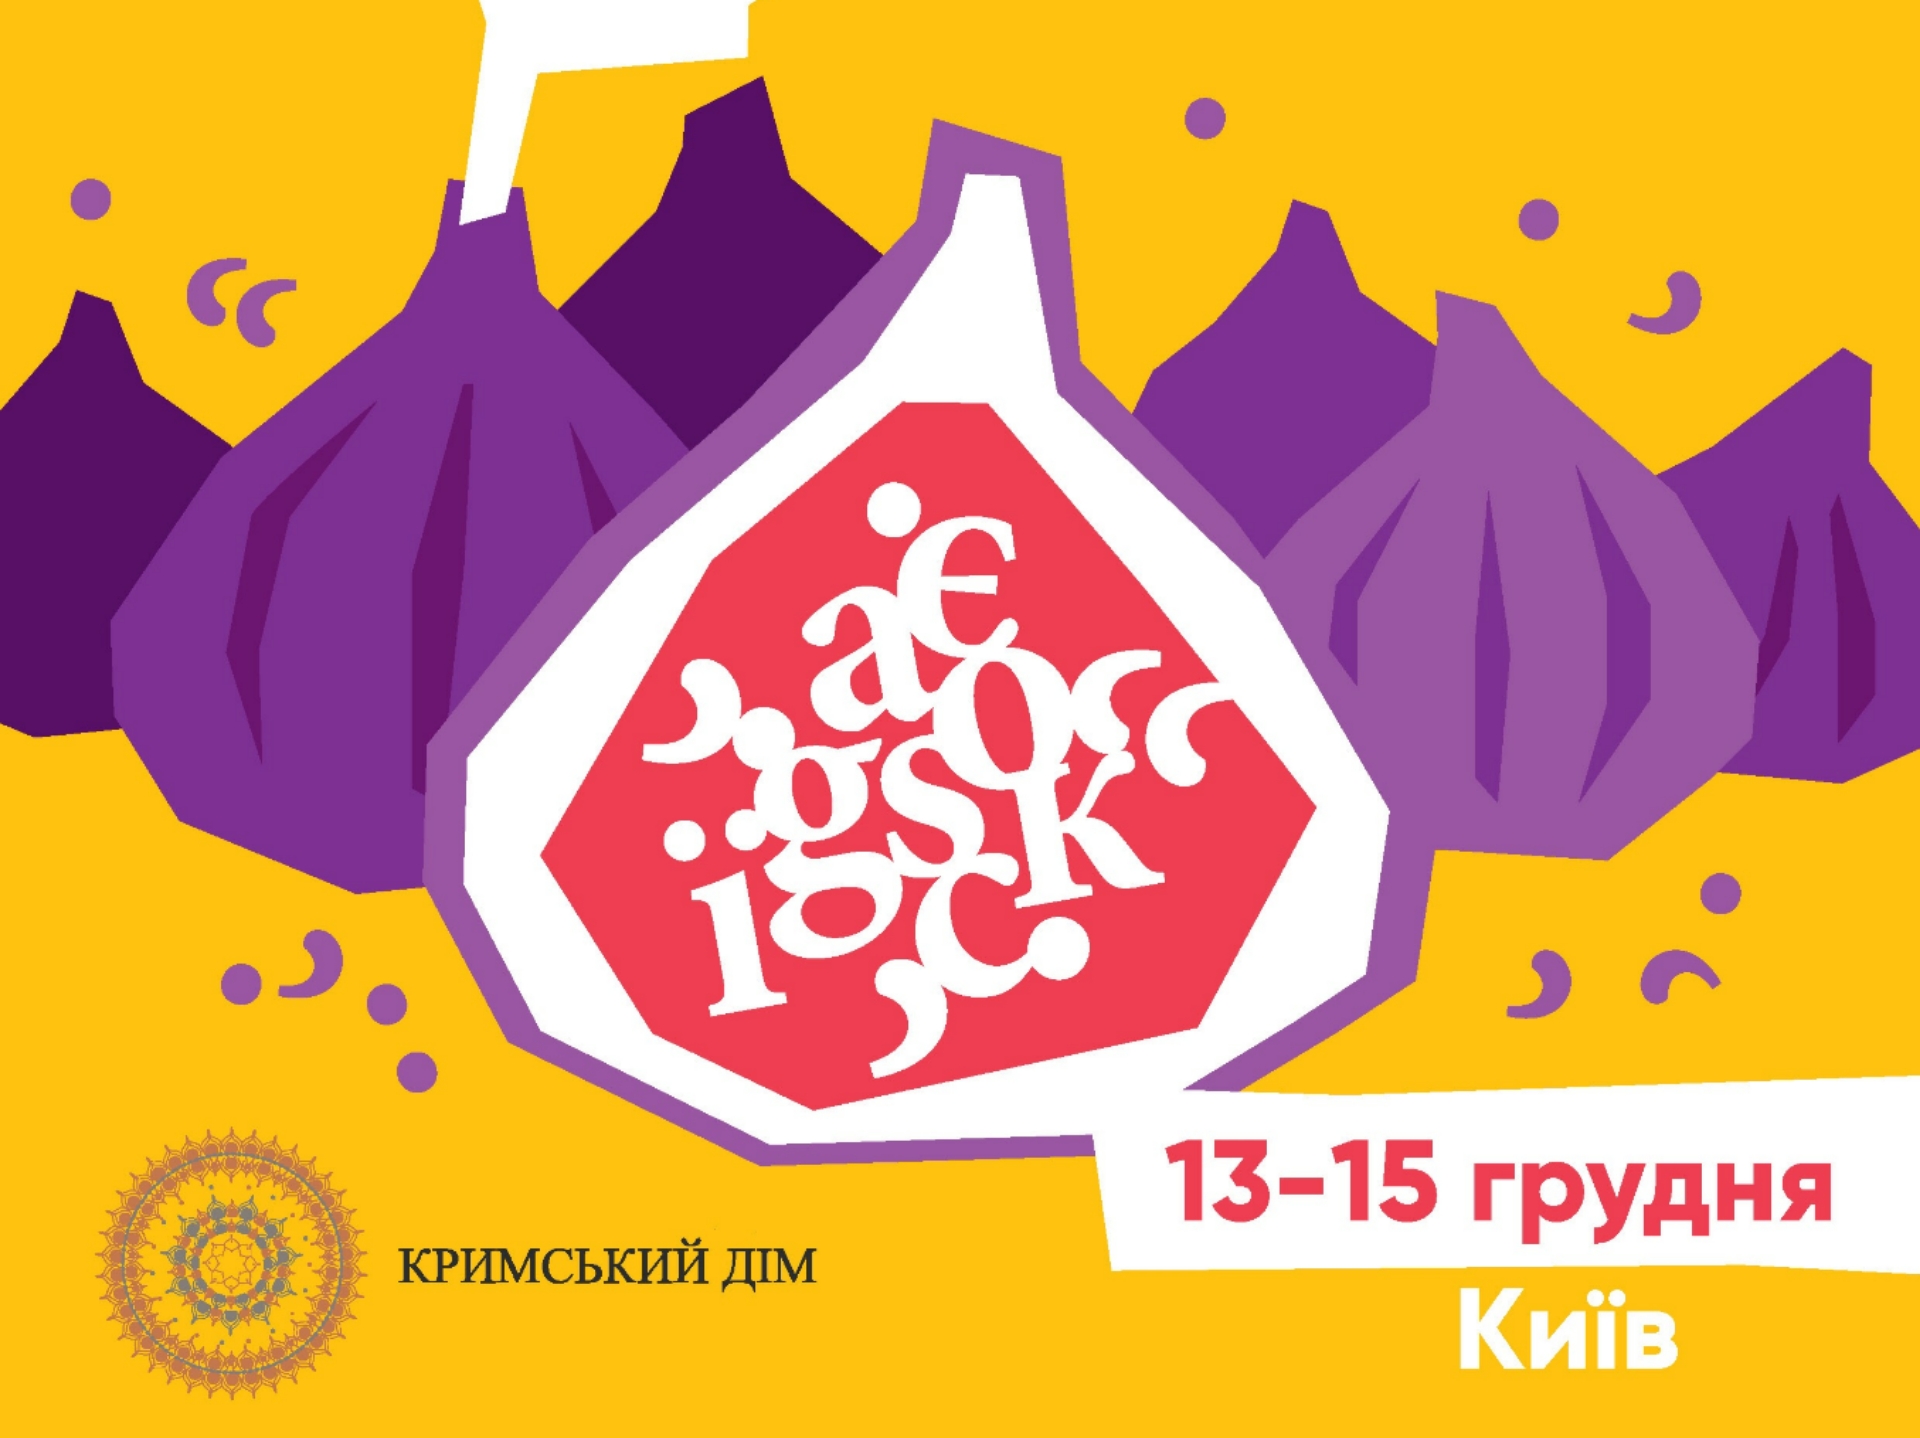 Звідки брати сили в моменти зневіри: у Кримському домі стартує фестиваль «Кримський інжир»